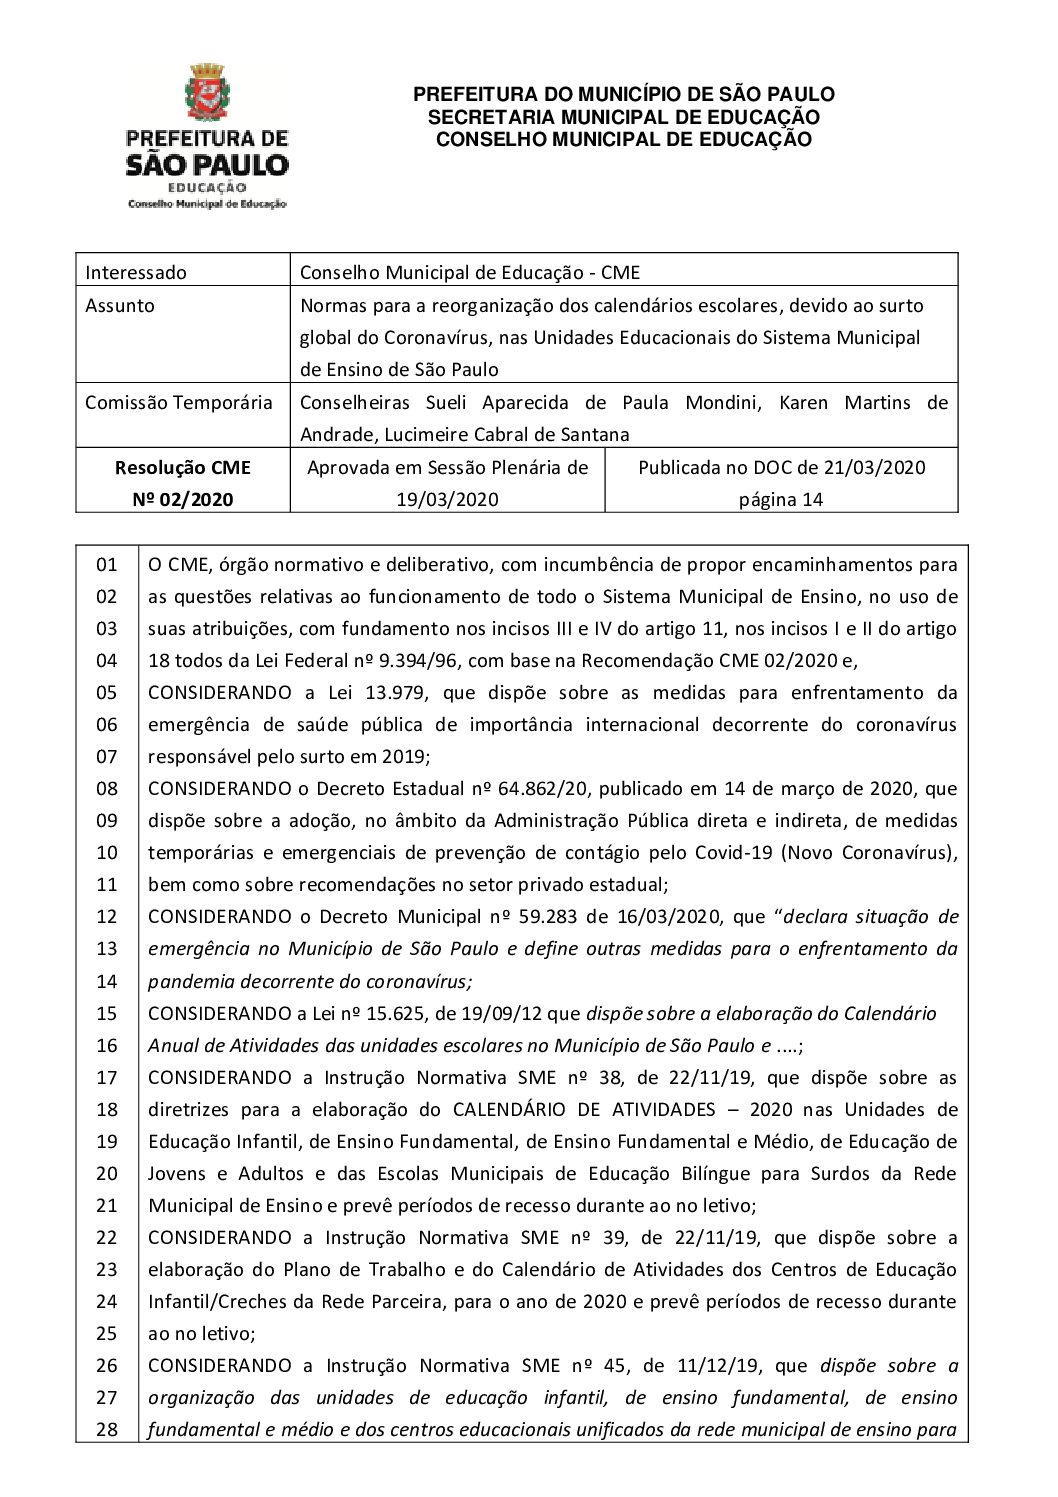 Resolução CME nº 02/2020 - Normas para a reorganização dos calendários escolares, devido ao surto global do Coronavírus, nas Unidades Educacionais do Sistema Municipal de Ensino de São Paulo 